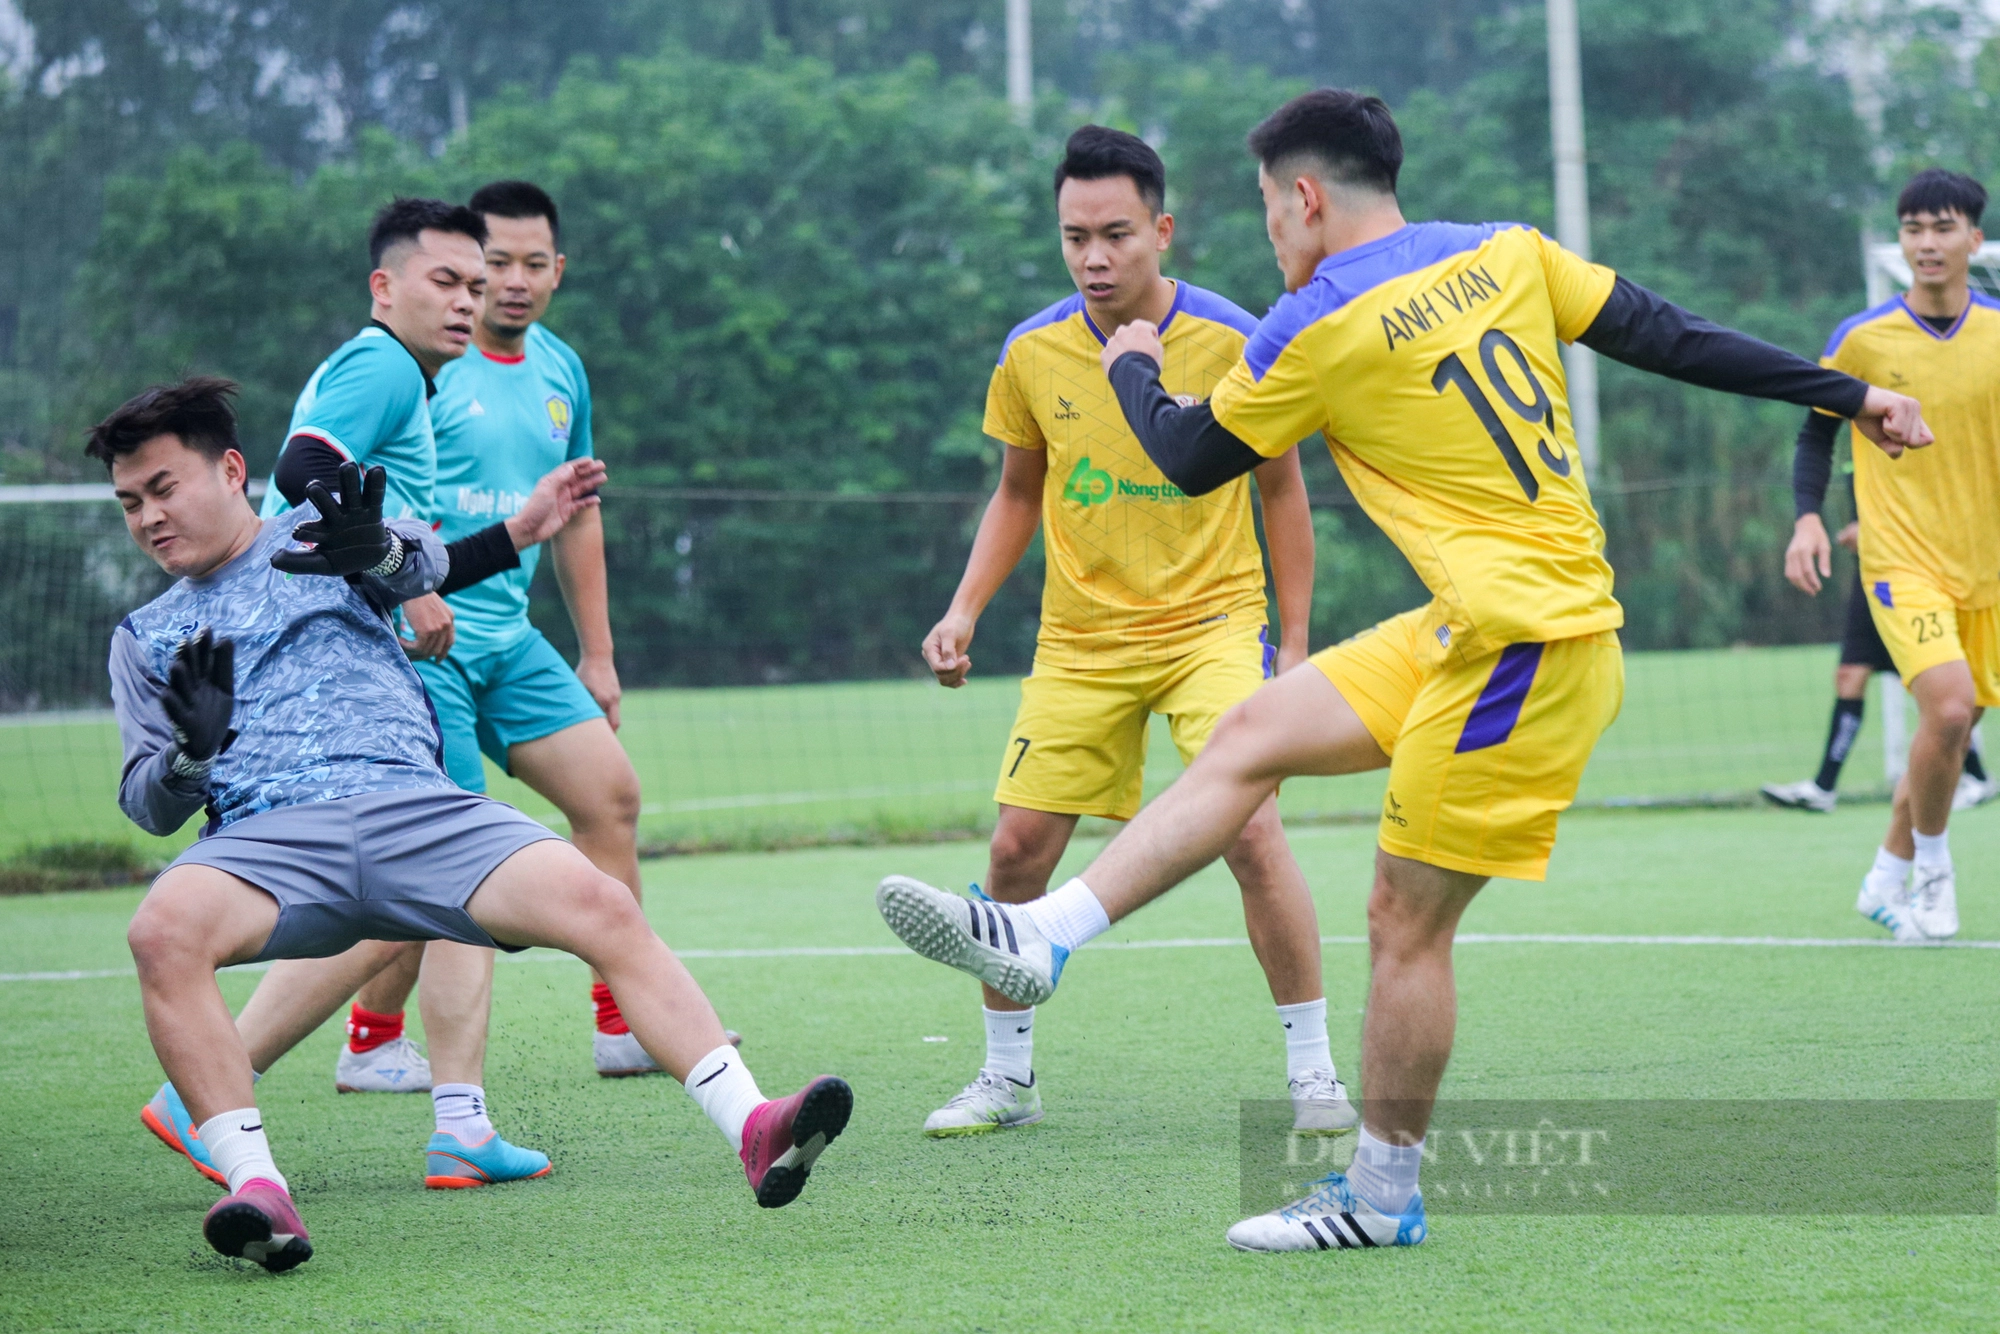 Lội ngược dòng ngoạn mục: Đội bóng Báo NTNN/Dân Việt giành vé vào chơi trận chung kết - Ảnh 4.